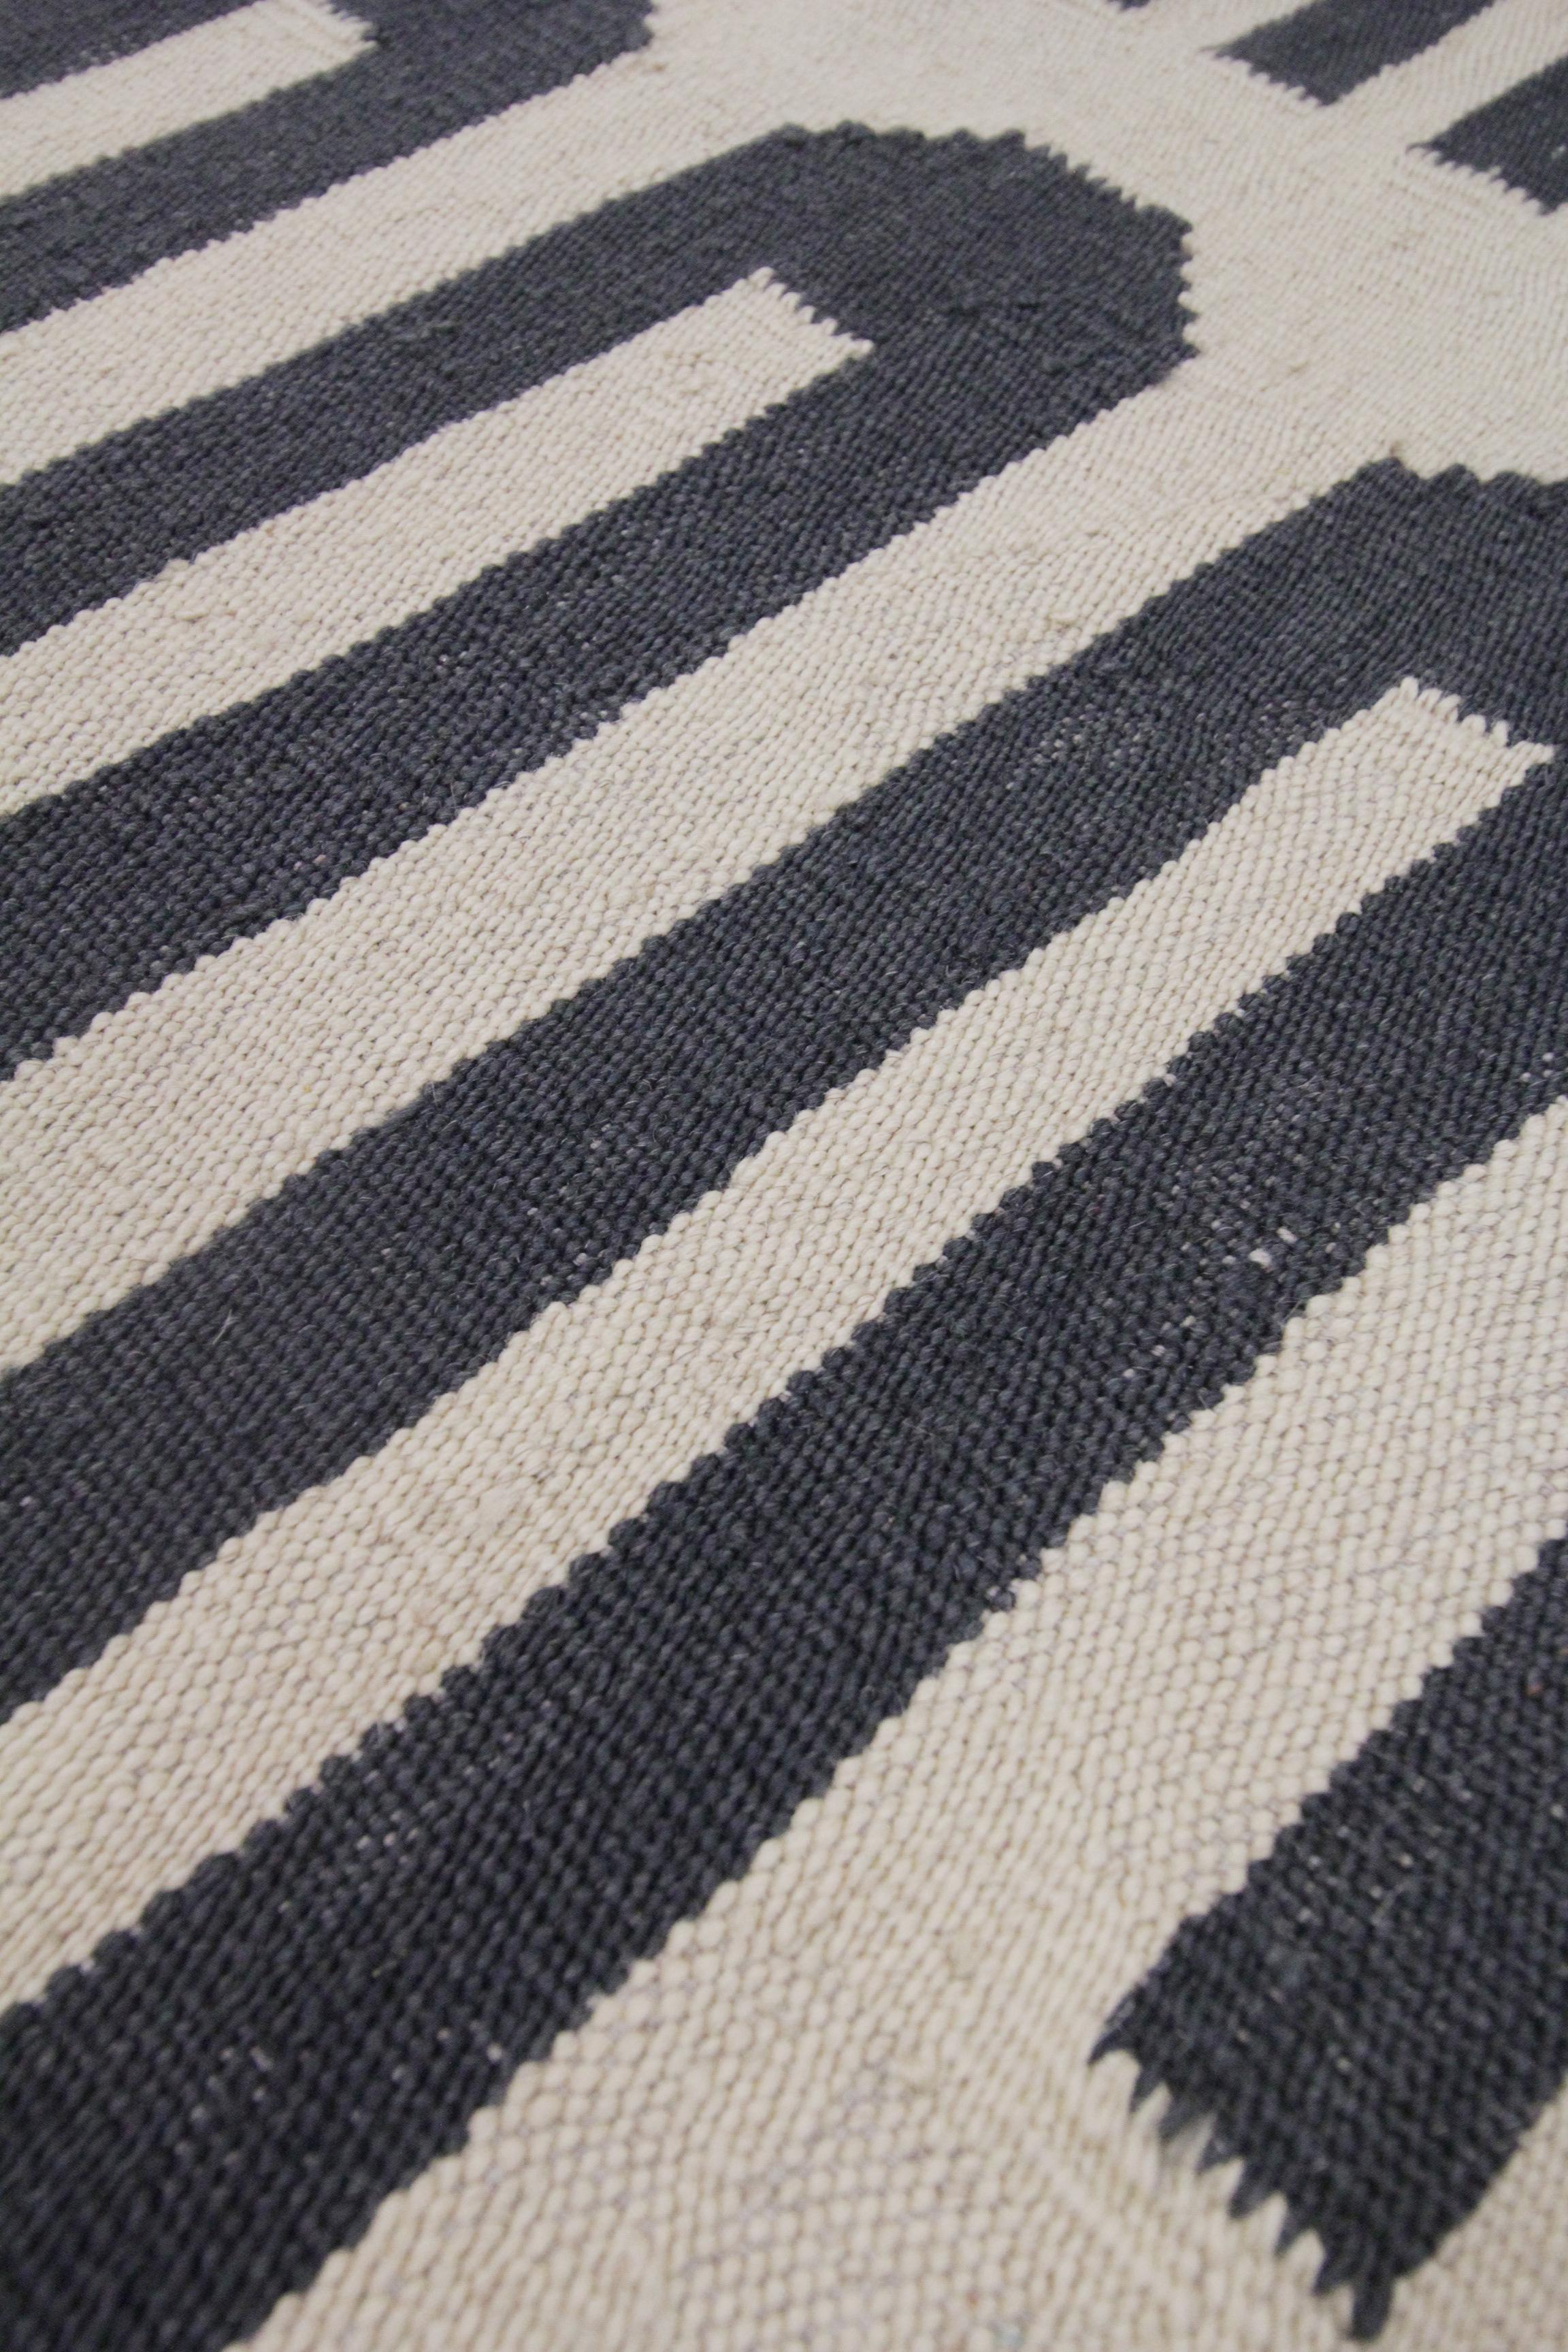 Afghan Modern Kilim Rug Geometric Kilim Area Rug Wool Cream Grey Rug 180 x 225cm For Sale